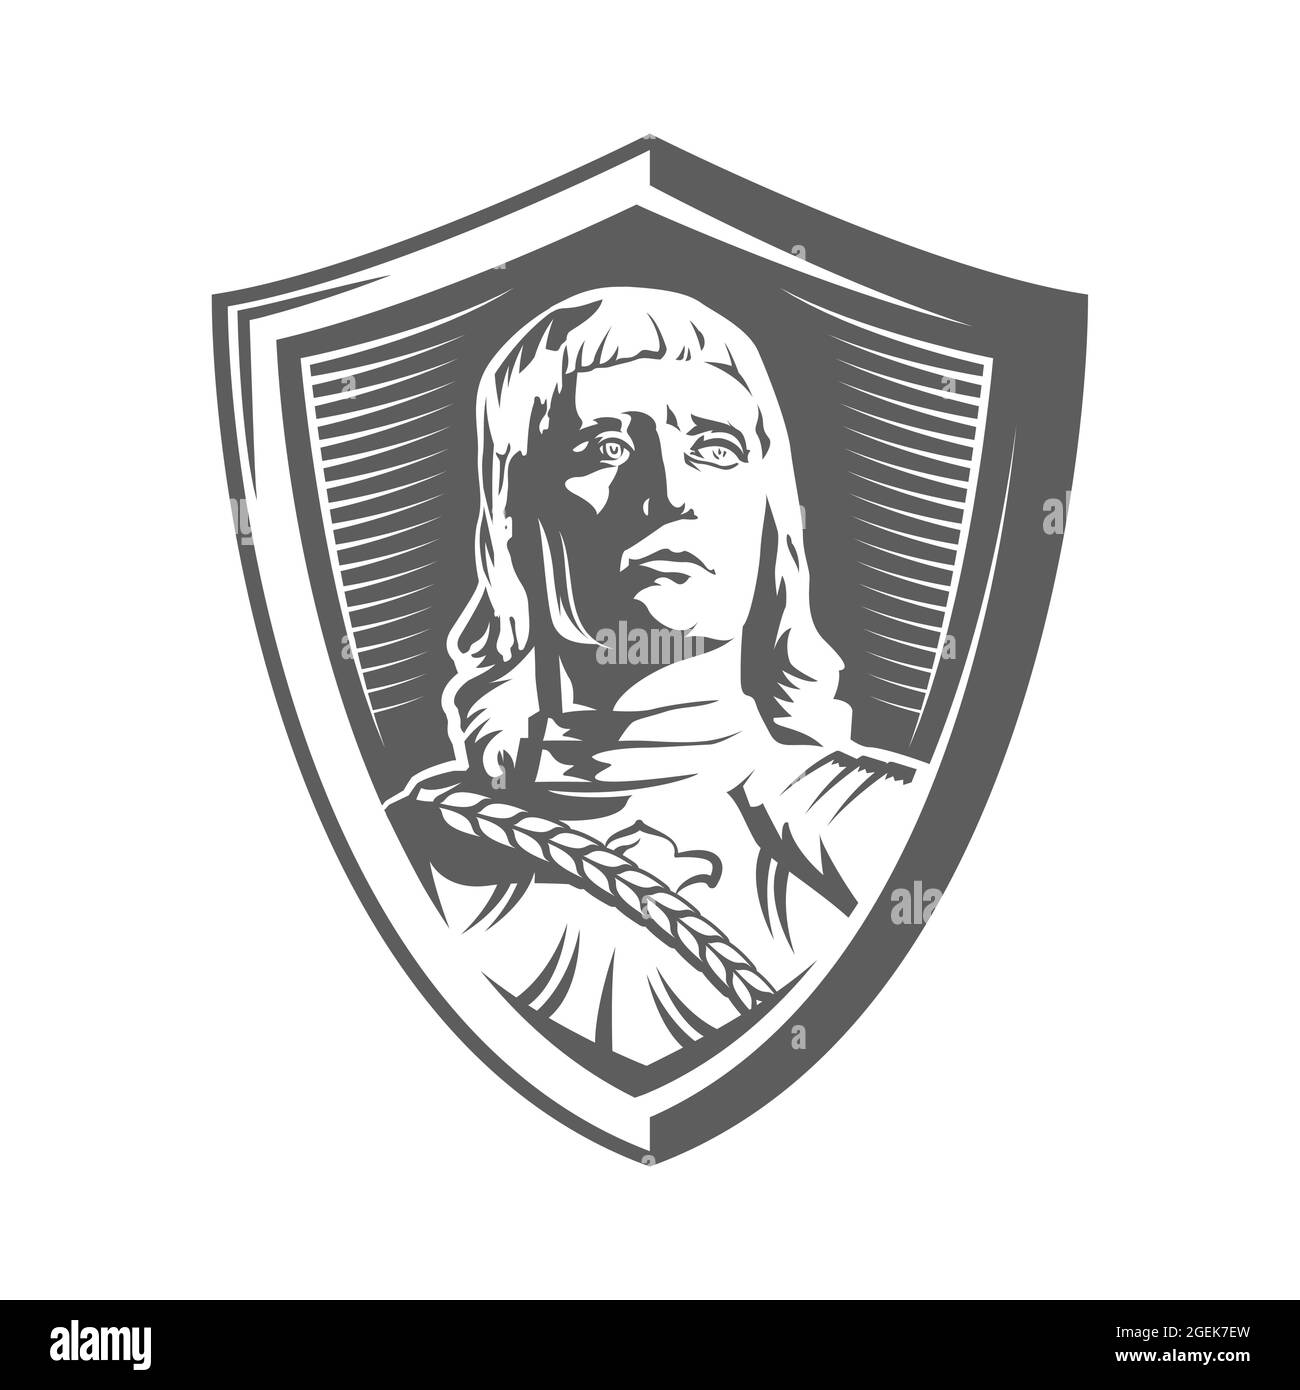 Silhouette des Ritters Roland von Riga Lettland in einem Schild, das Reichtum, Wohlstand und Gerechtigkeit symbolisiert. Vektorgrafik Stock Vektor